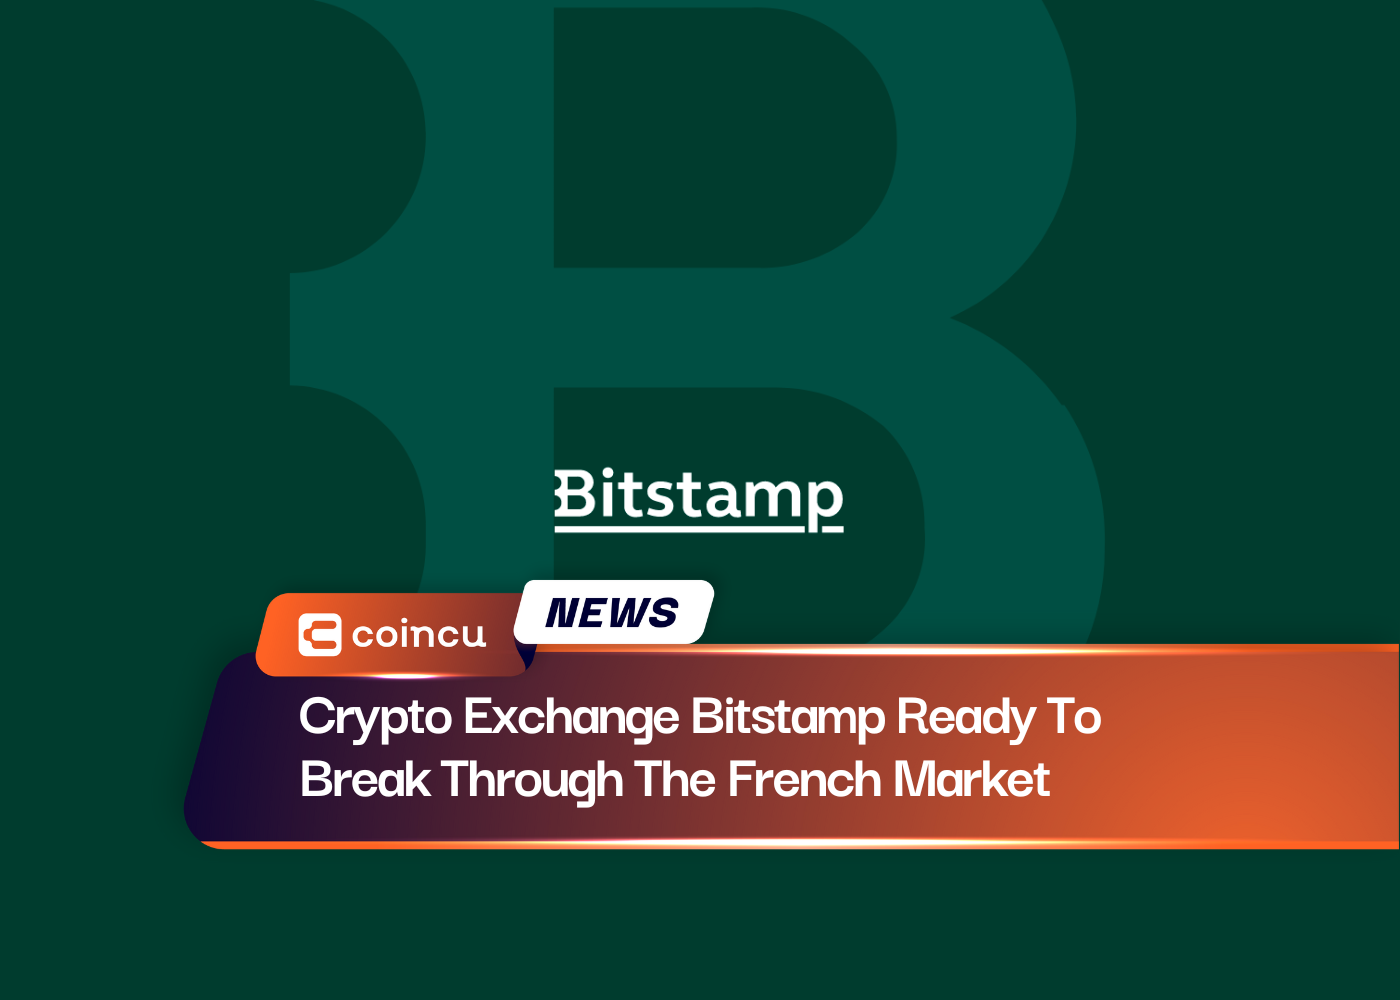 加密货币交易所 Bitstamp 准备突破法国市场